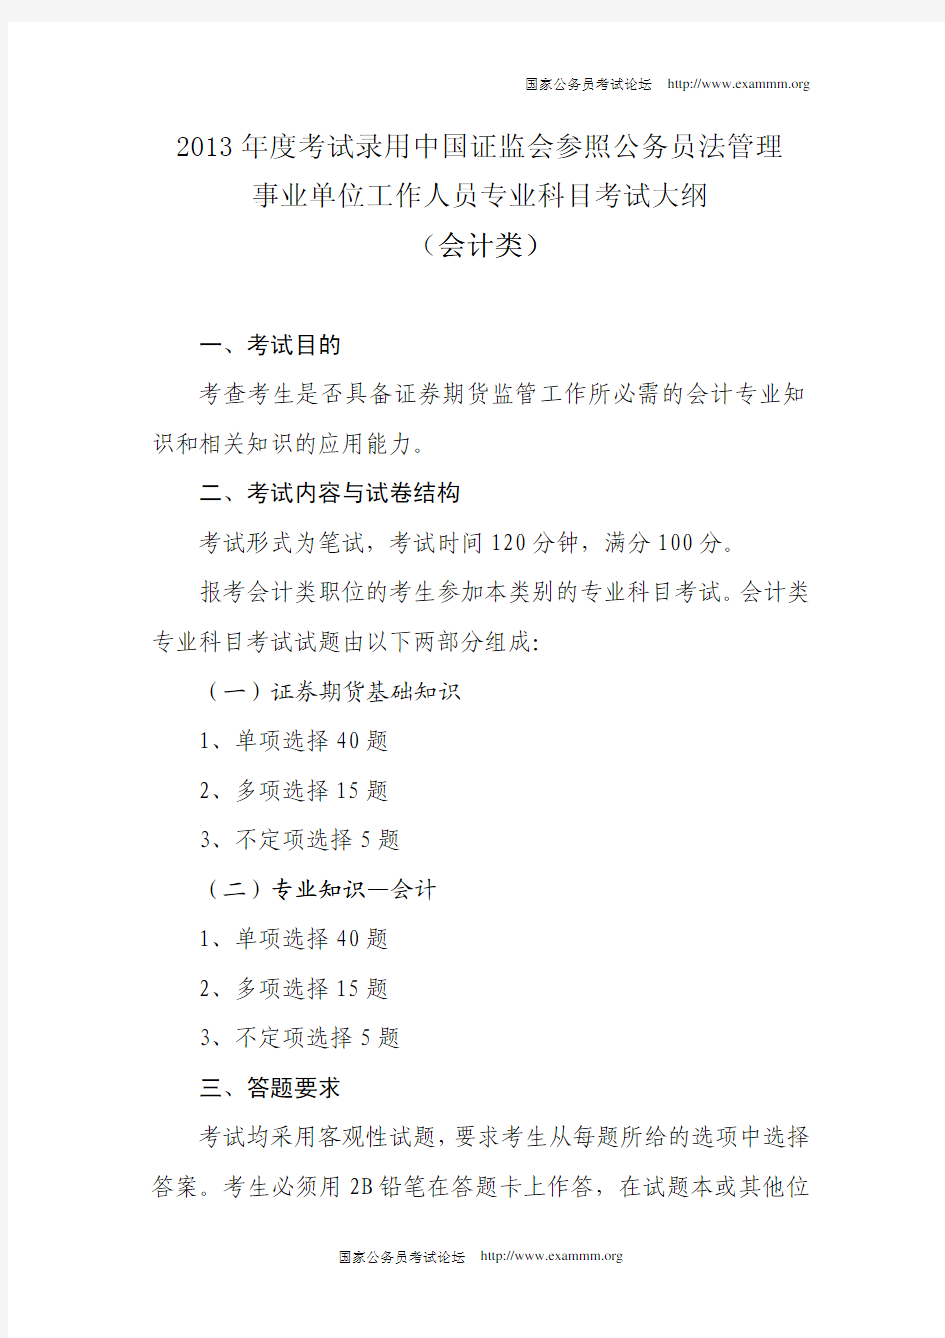 2013年度考试录用中国证监会参照公务员法管理事业单位工作人员专业科目考试大纲(会计类)